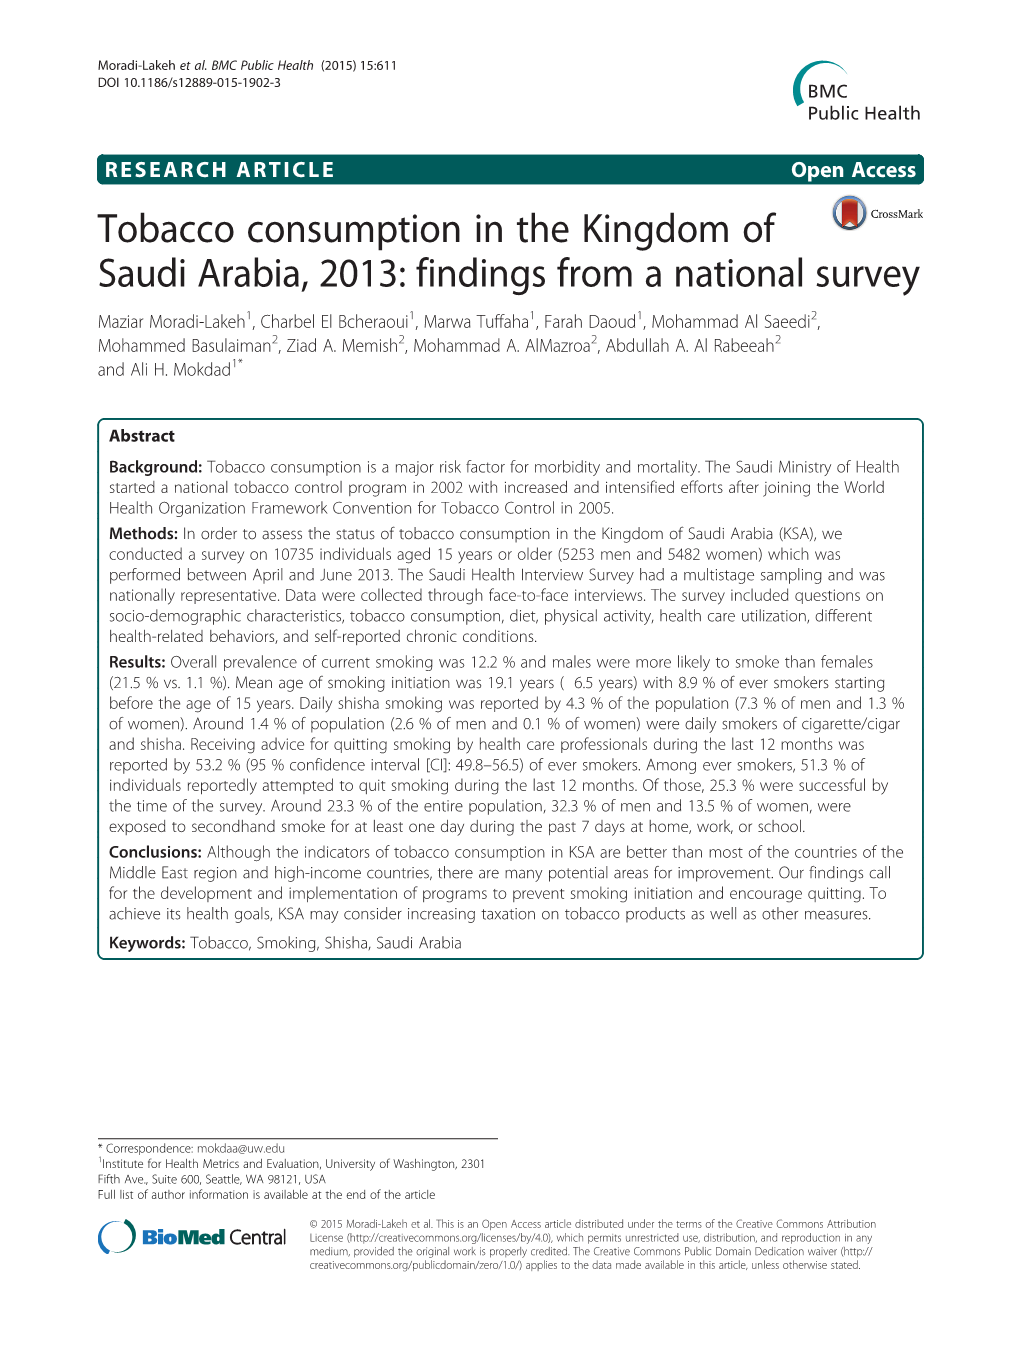 Tobacco Consumption in the Kingdom of Saudi Arabia, 2013